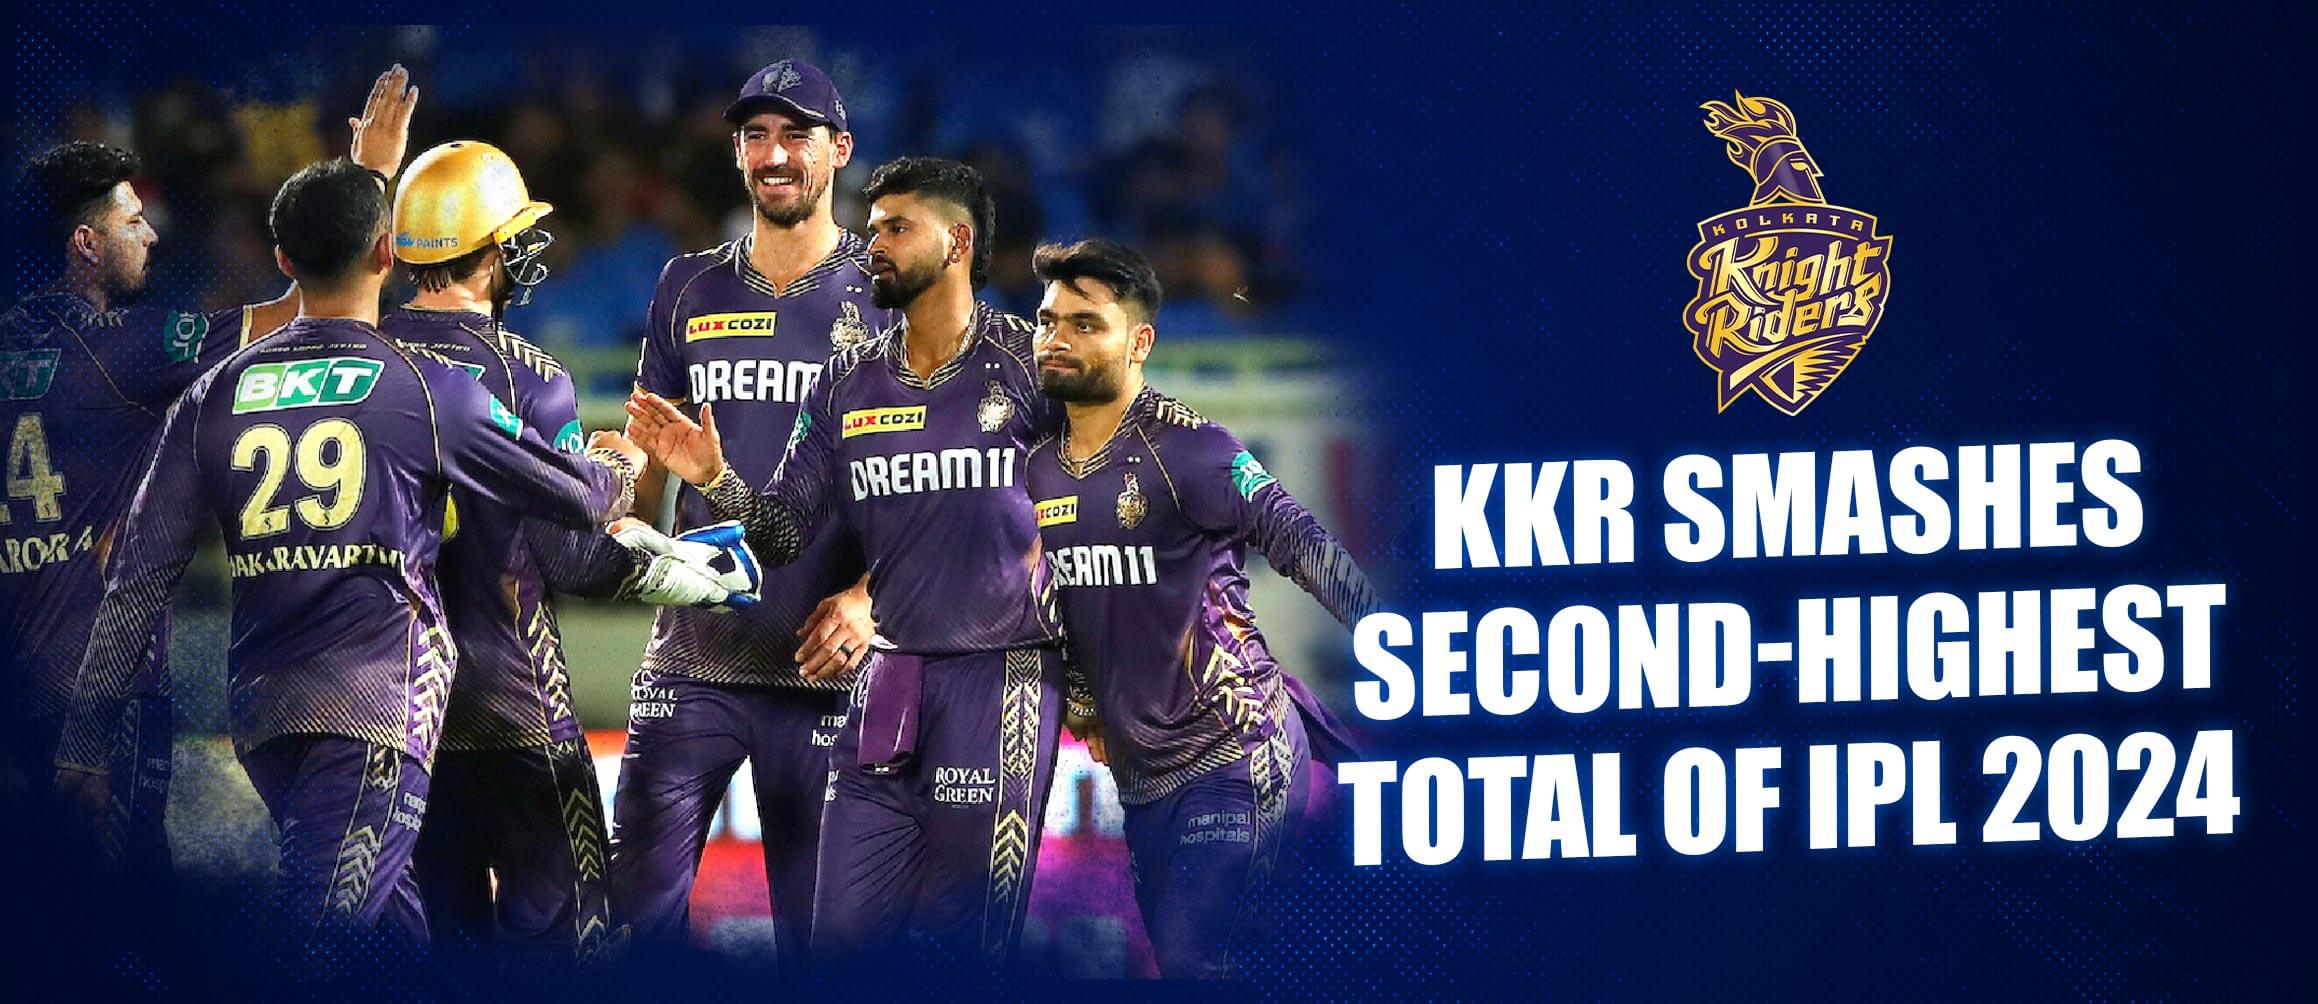 KKR Smashes Second-Highest Total of IPL 2024